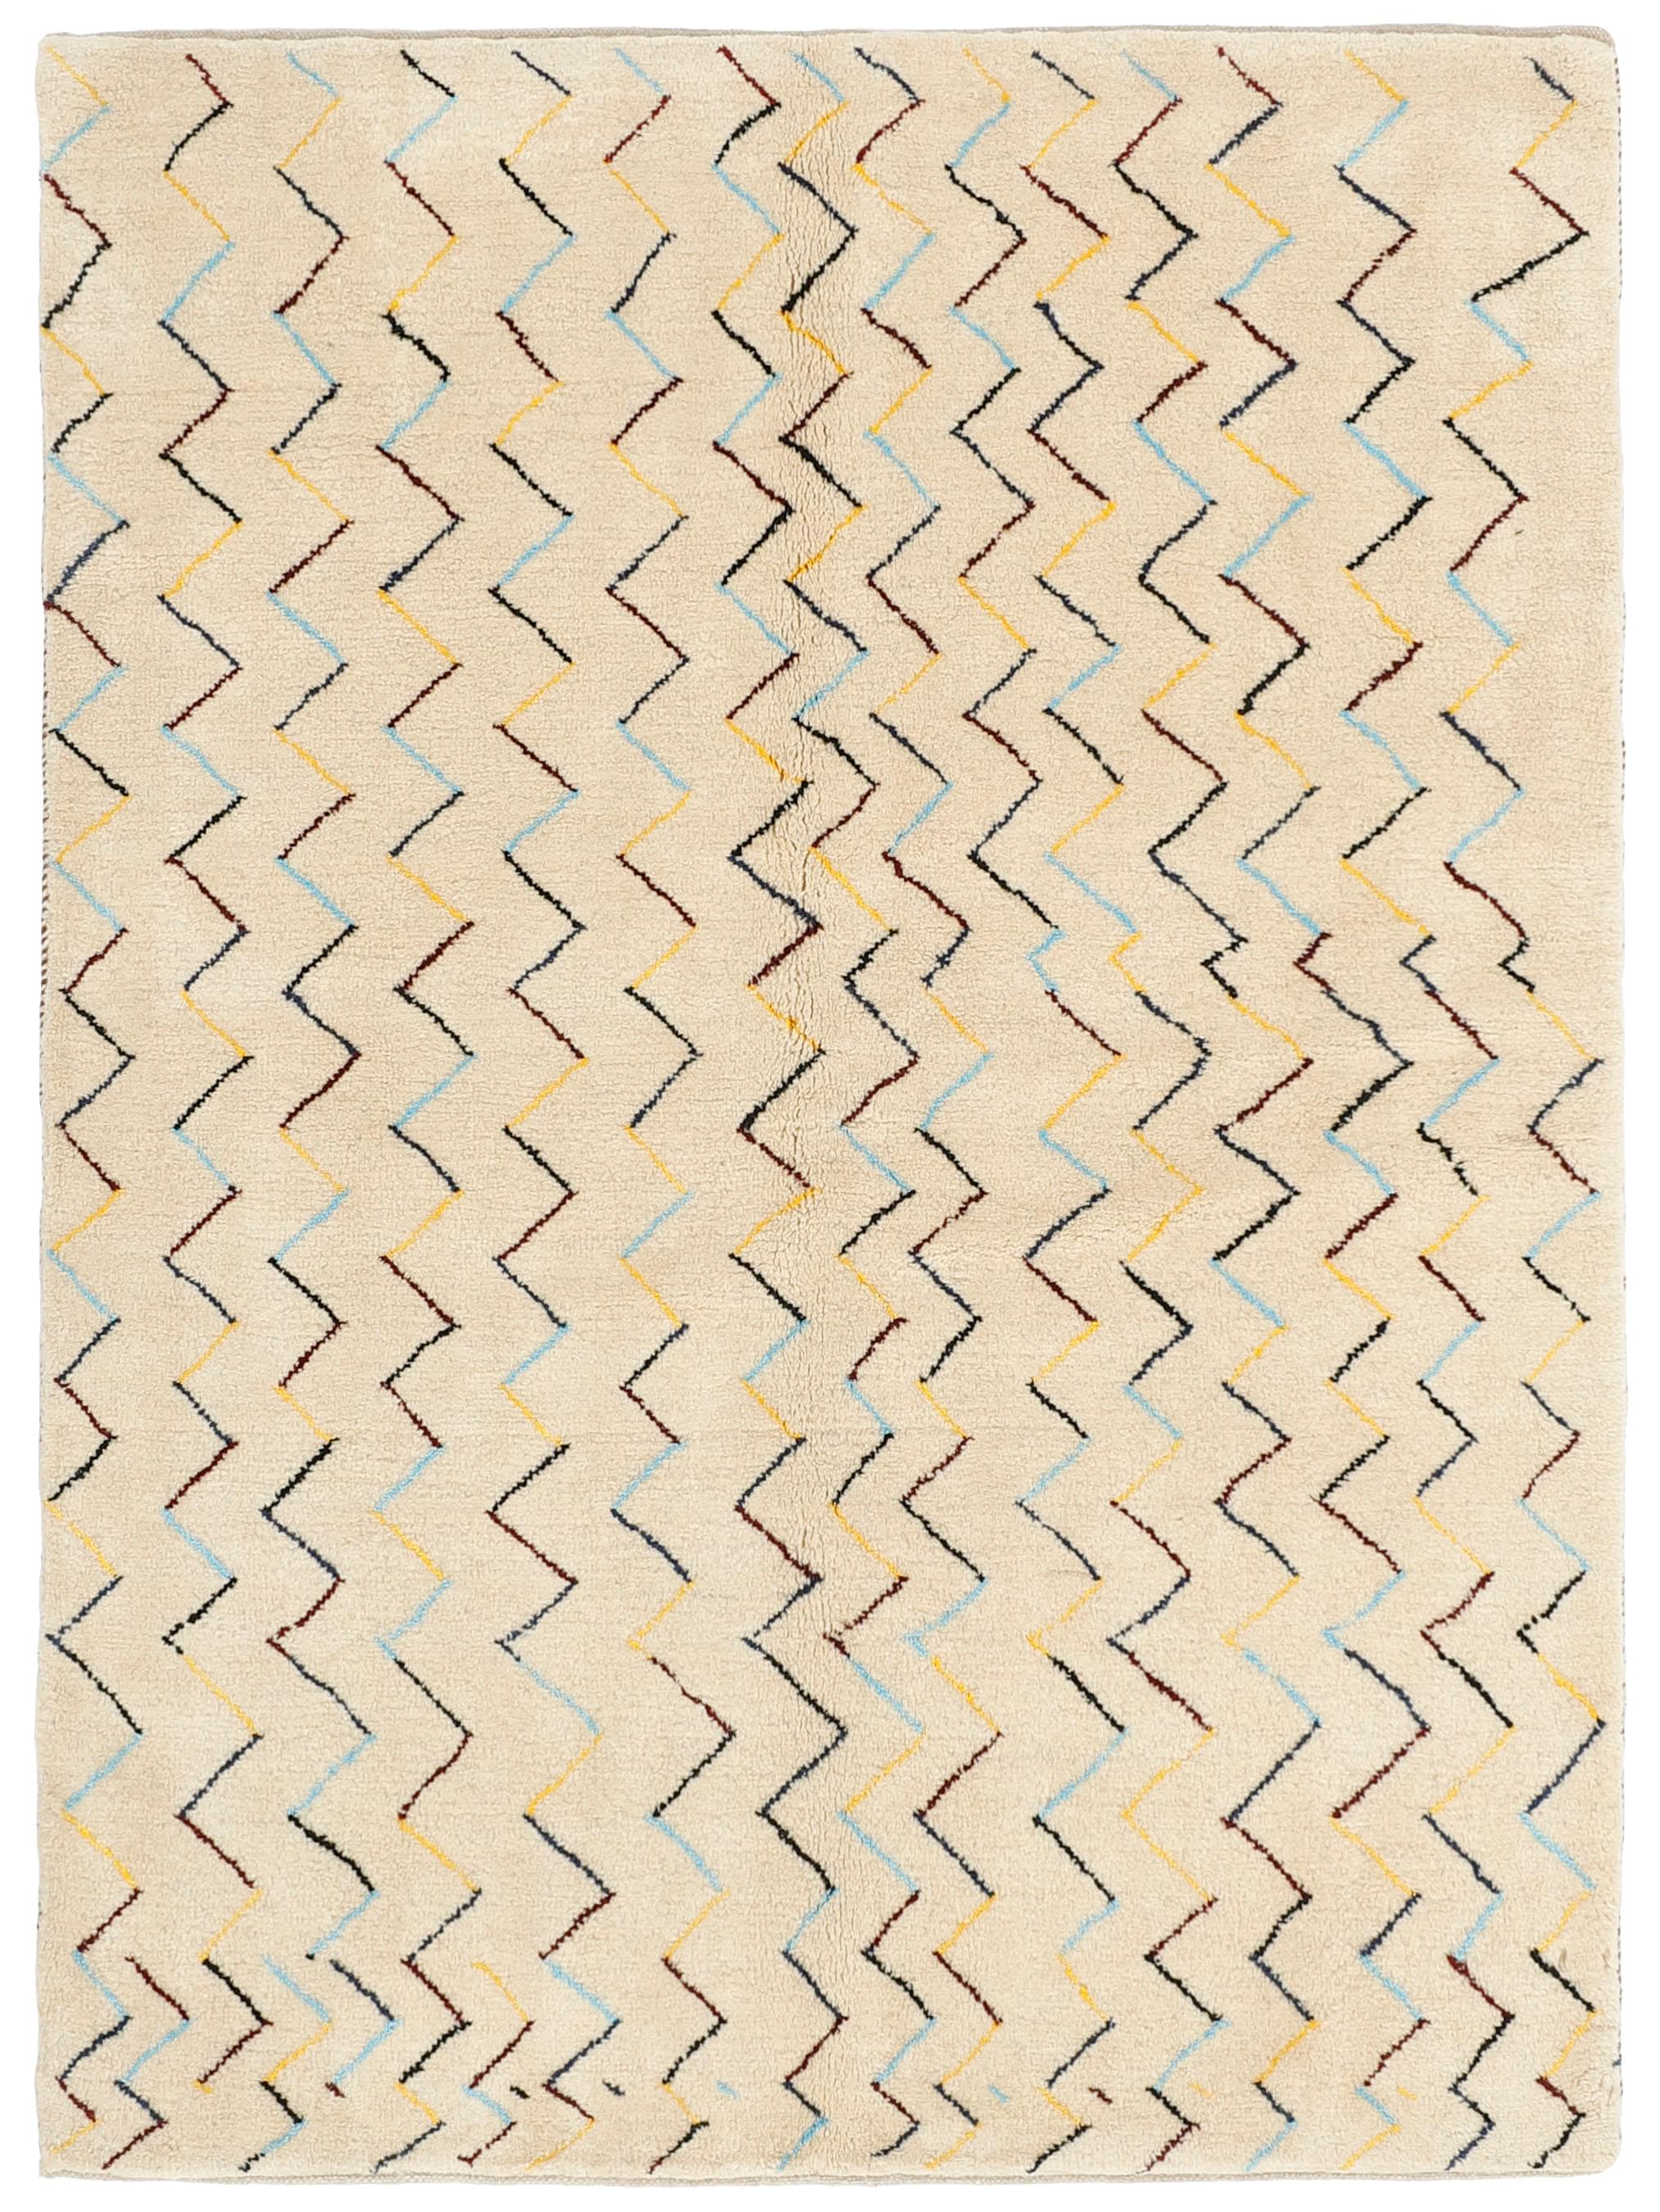 Authentic Oriental Kelim flatweave rug in brown and beige